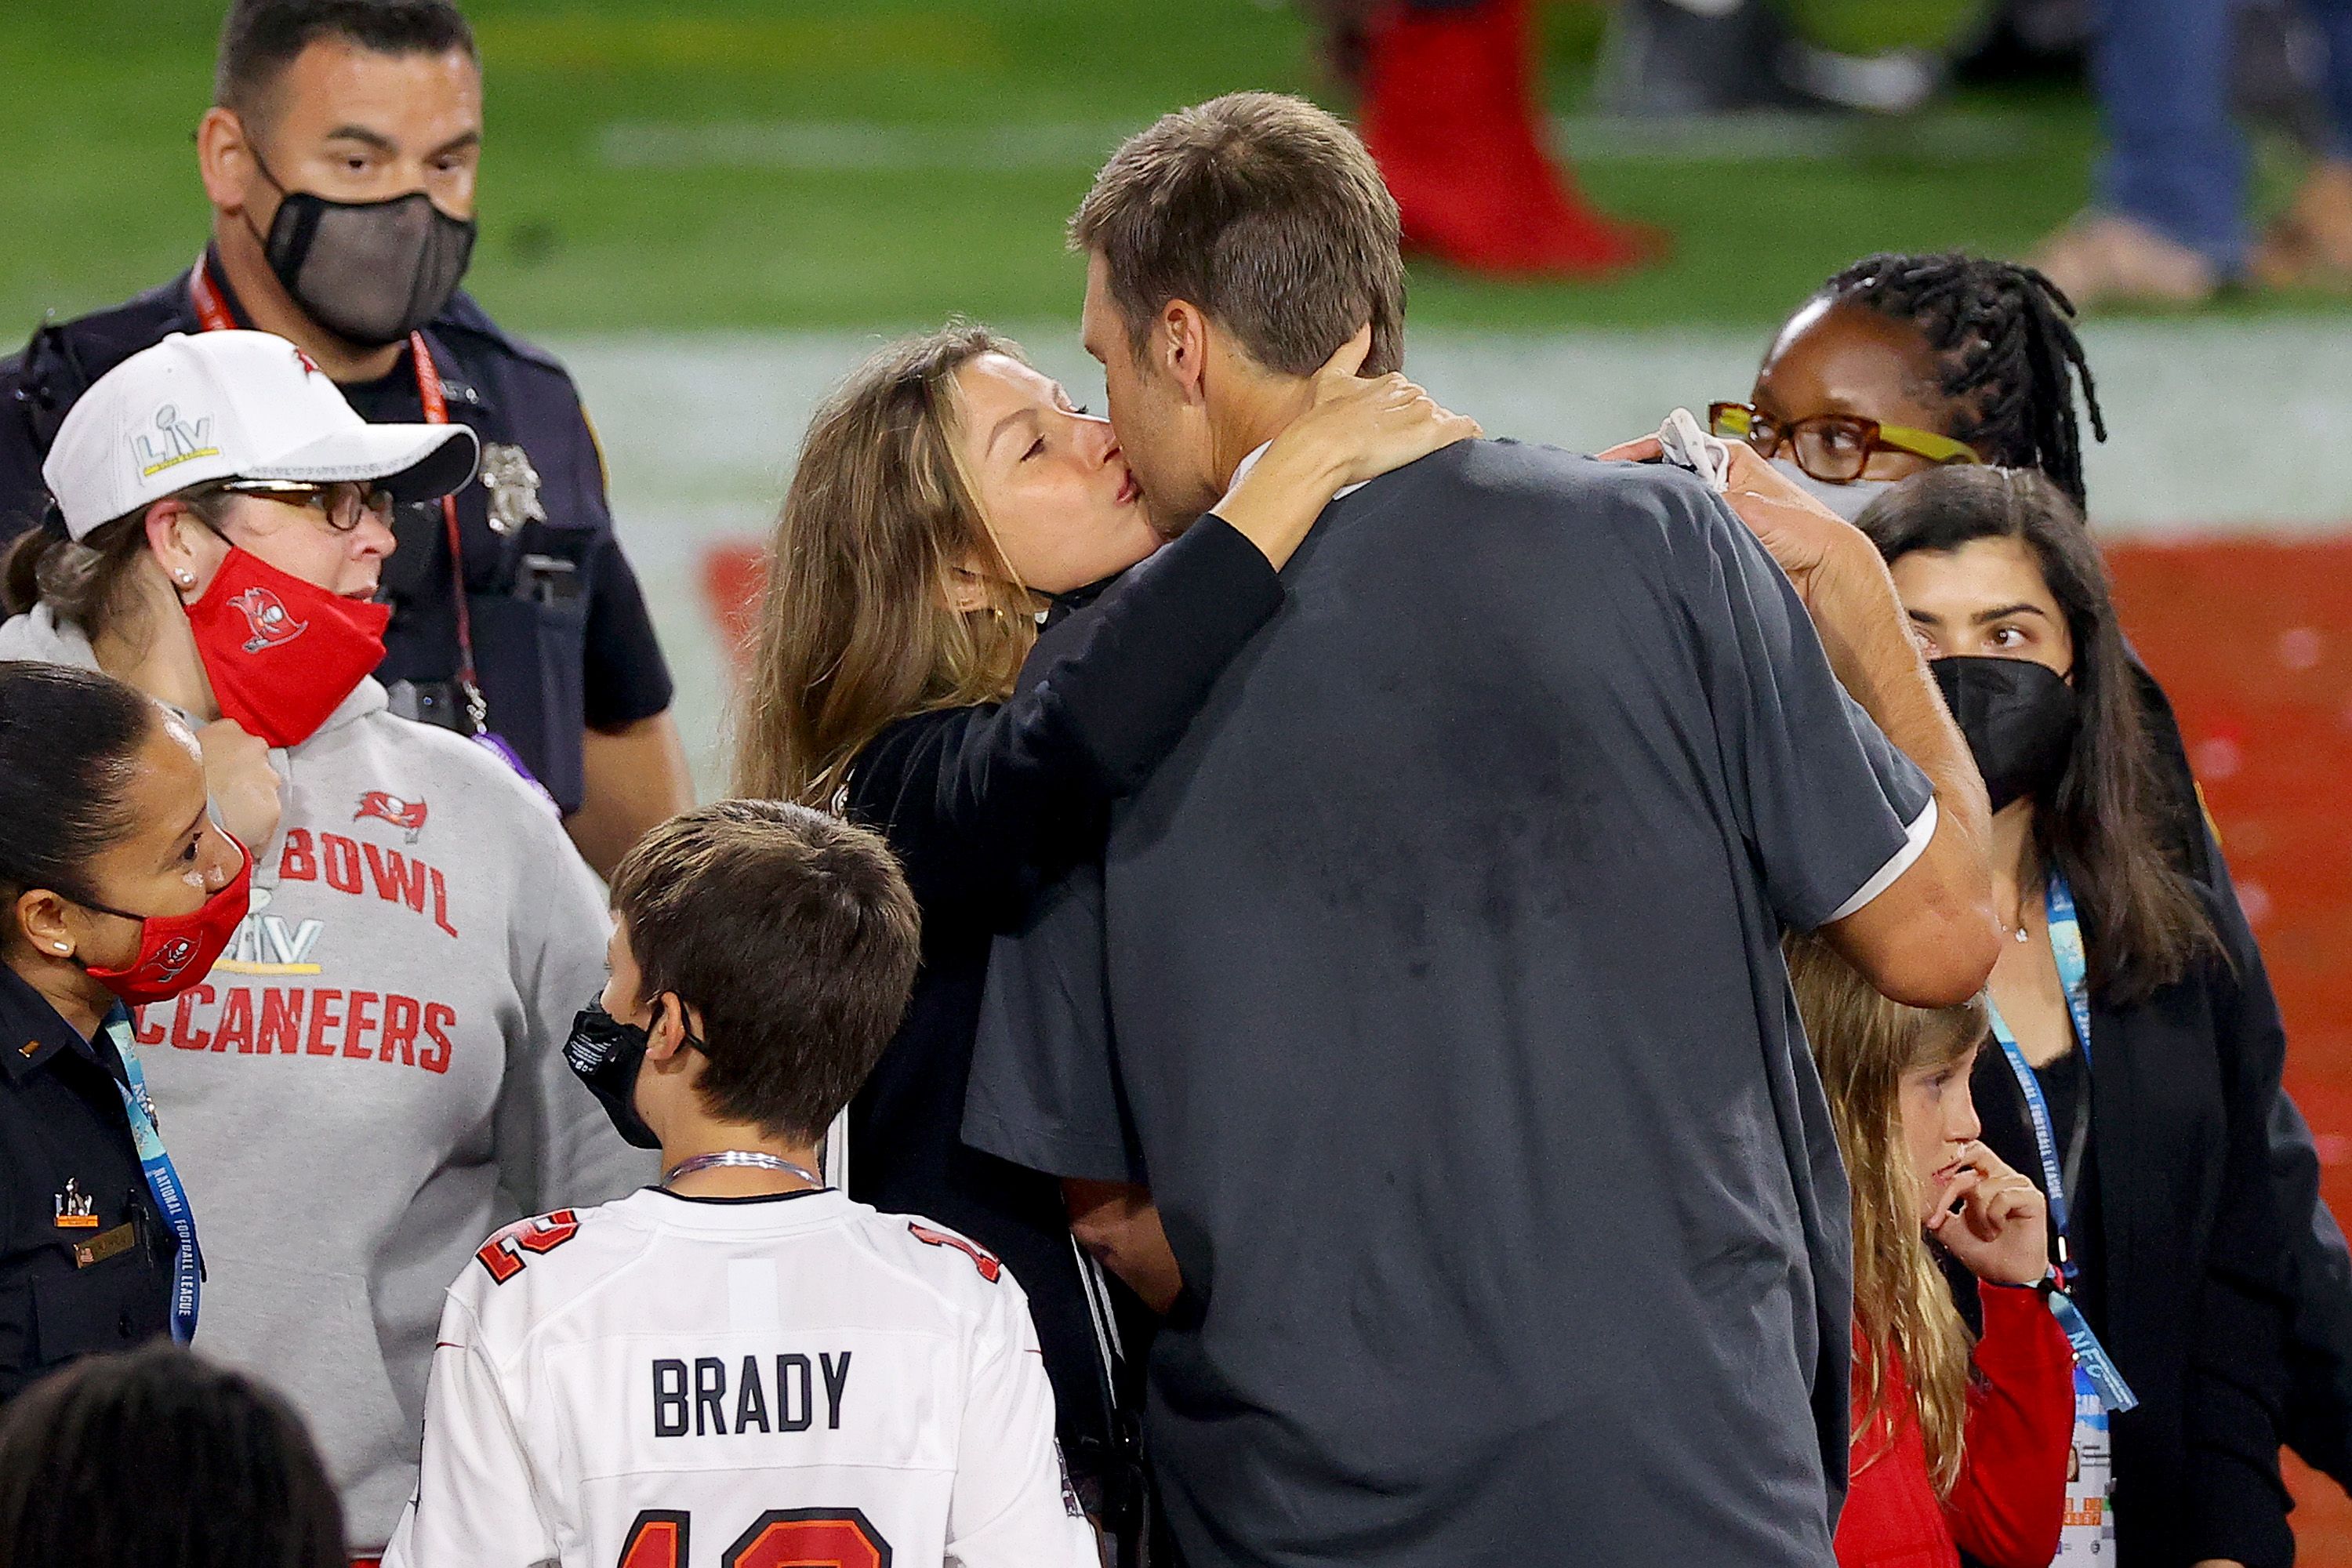 Gisele Bündchen﻿﻿ Supports Husband Tom Brady's NFL Return